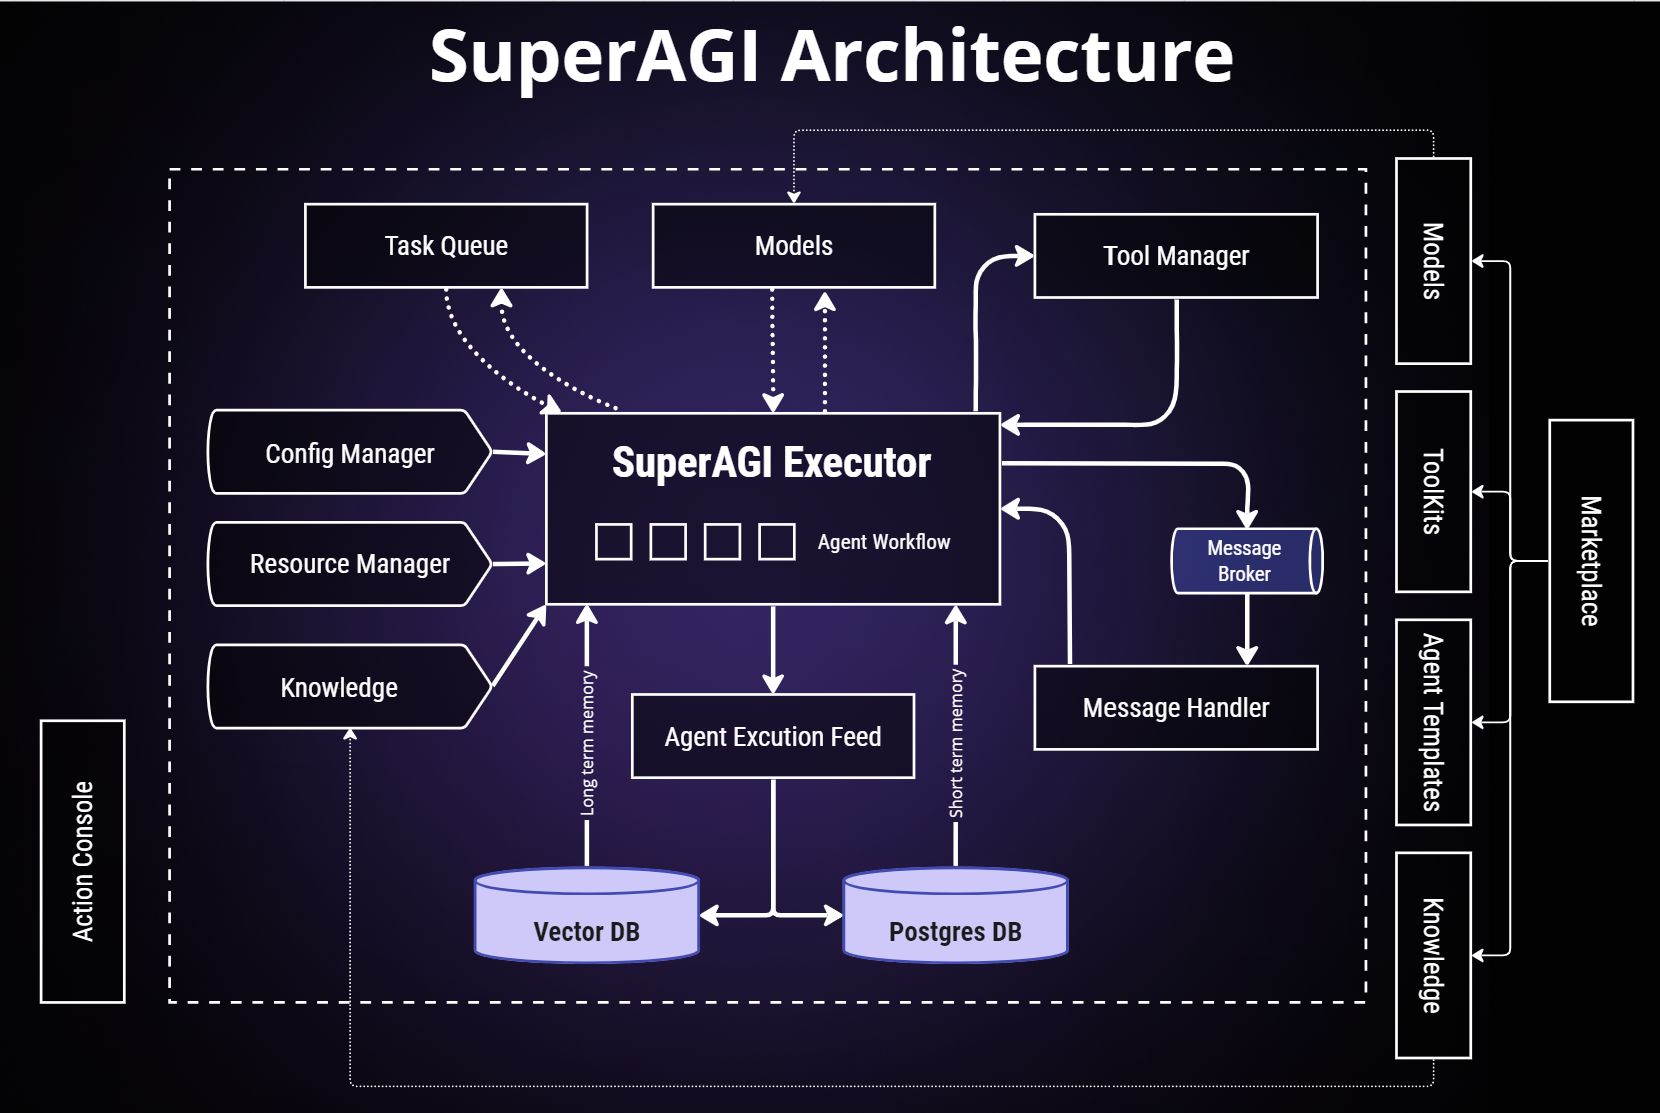 SuperAGI Architecture